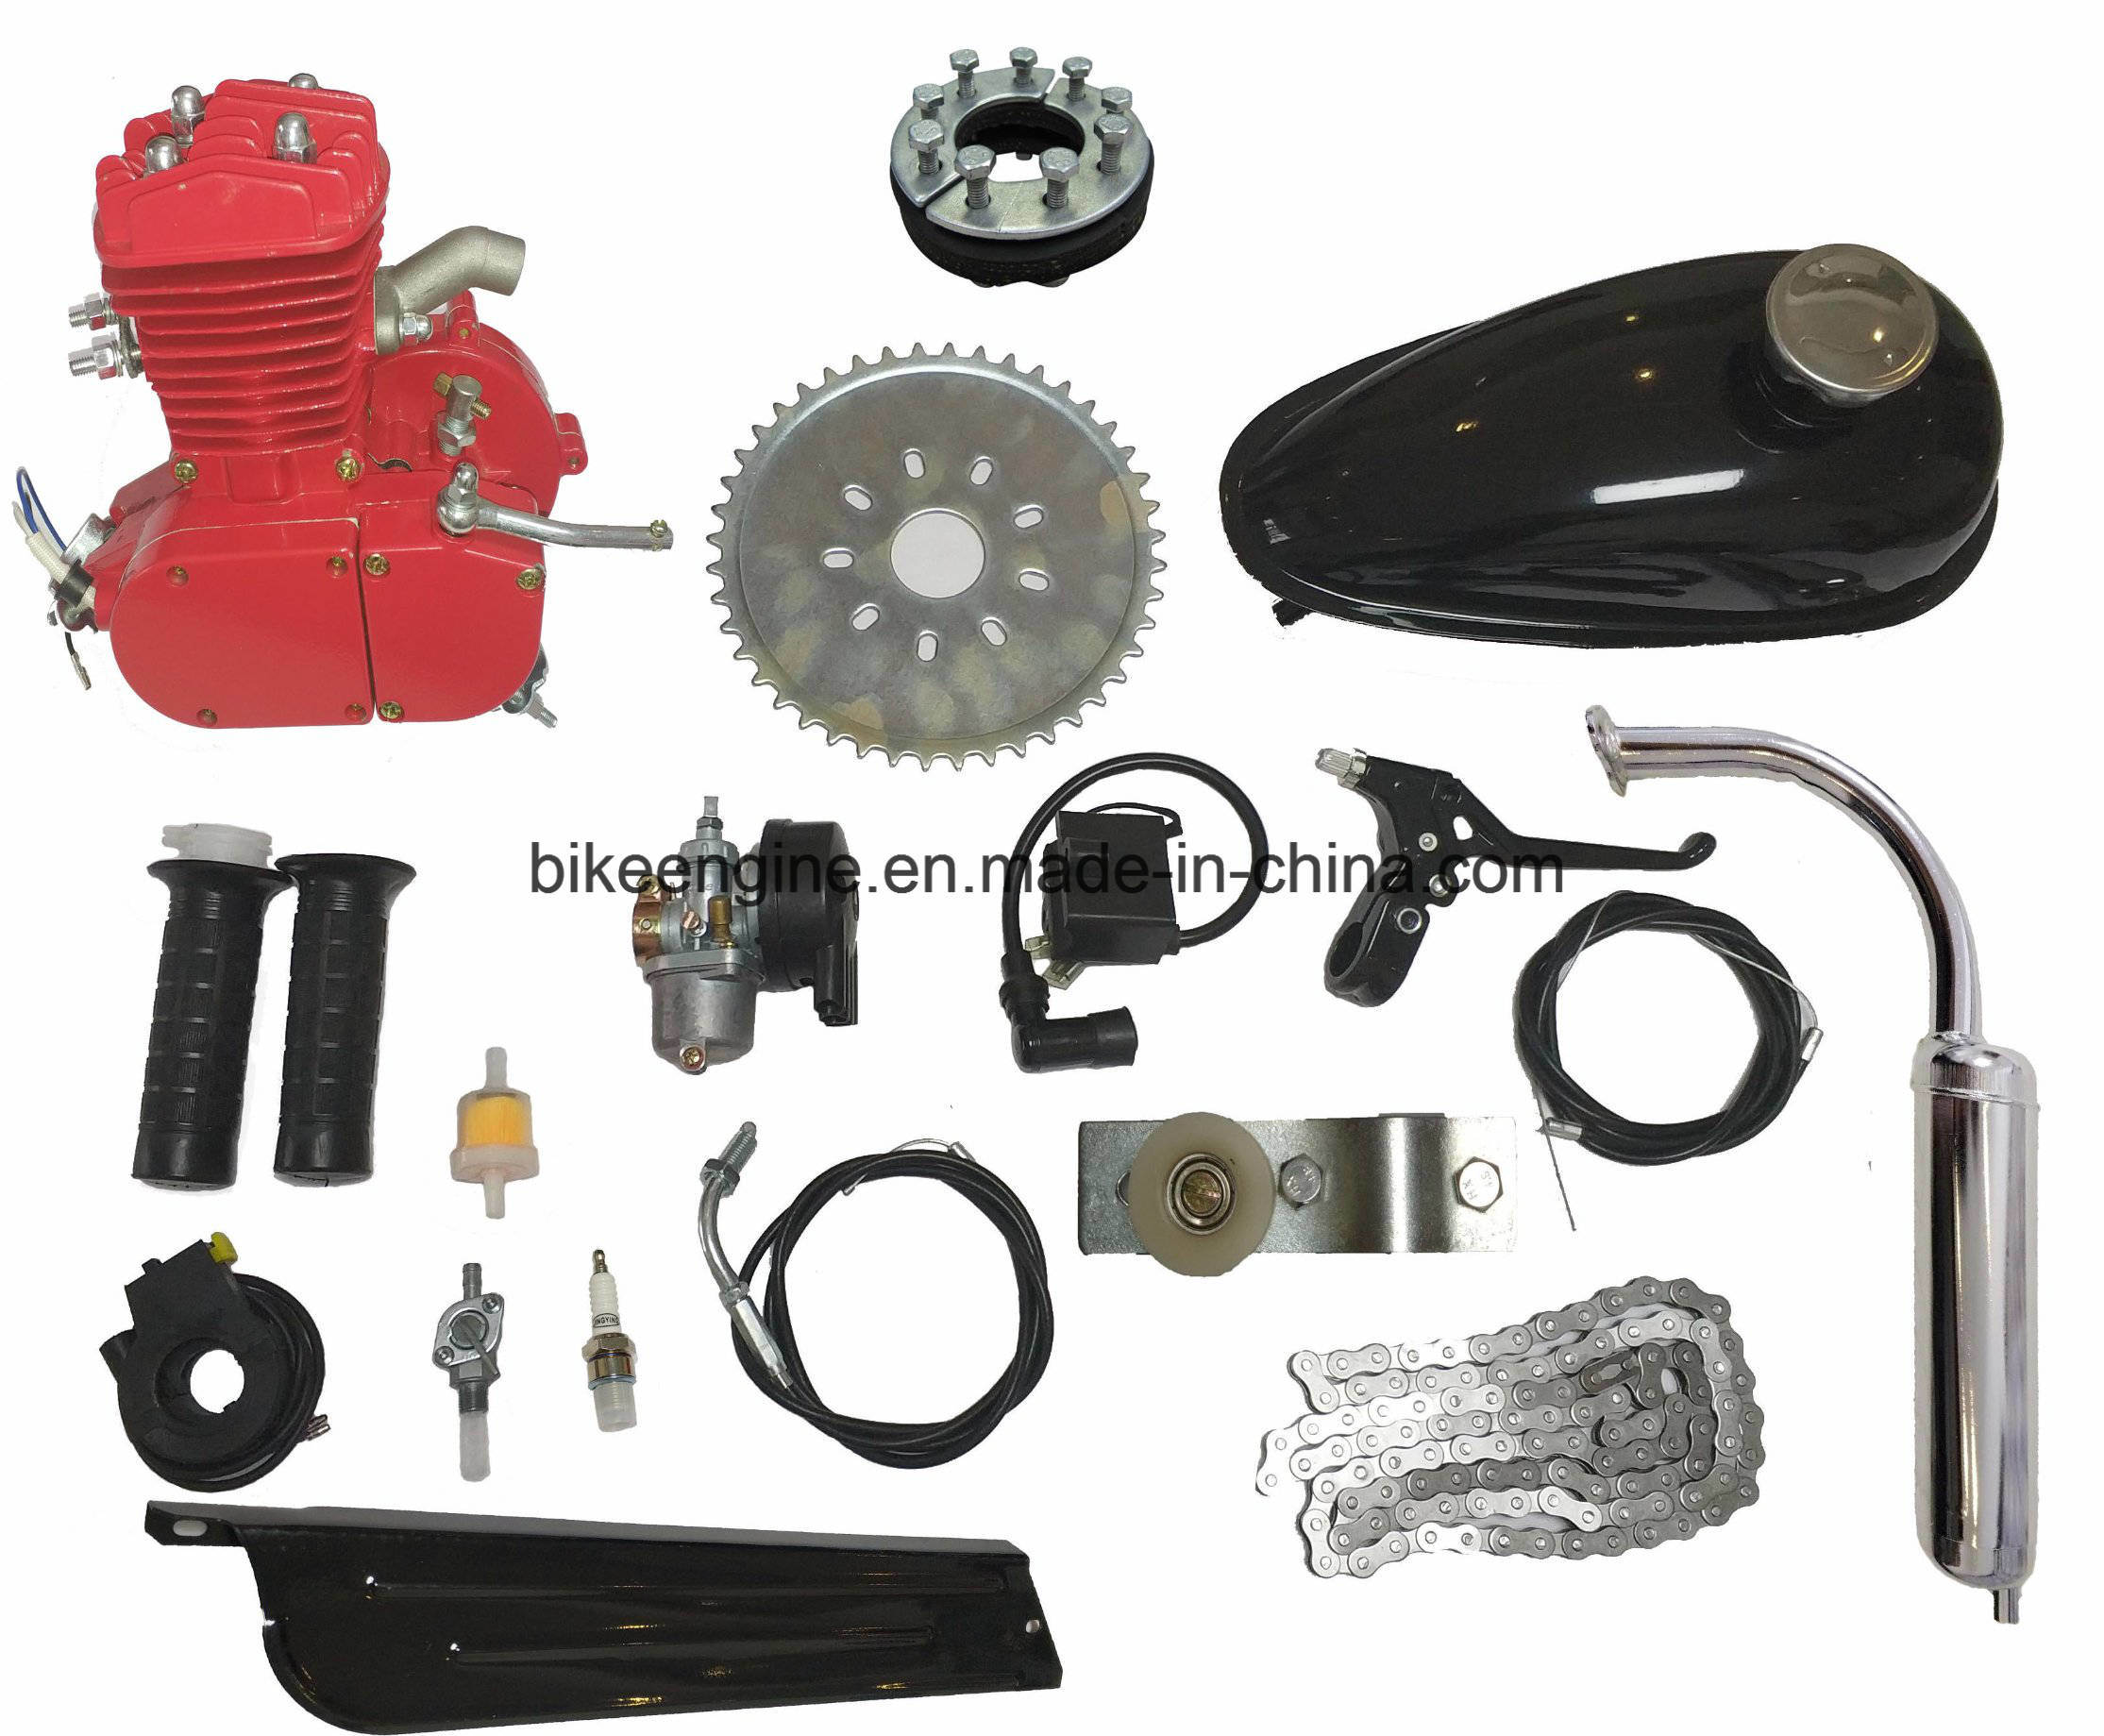 Red Painting 2 Stroke Motor Kit/ Gas Motor Kit/ Bike Motor Kit/Bicycle Engine Kit